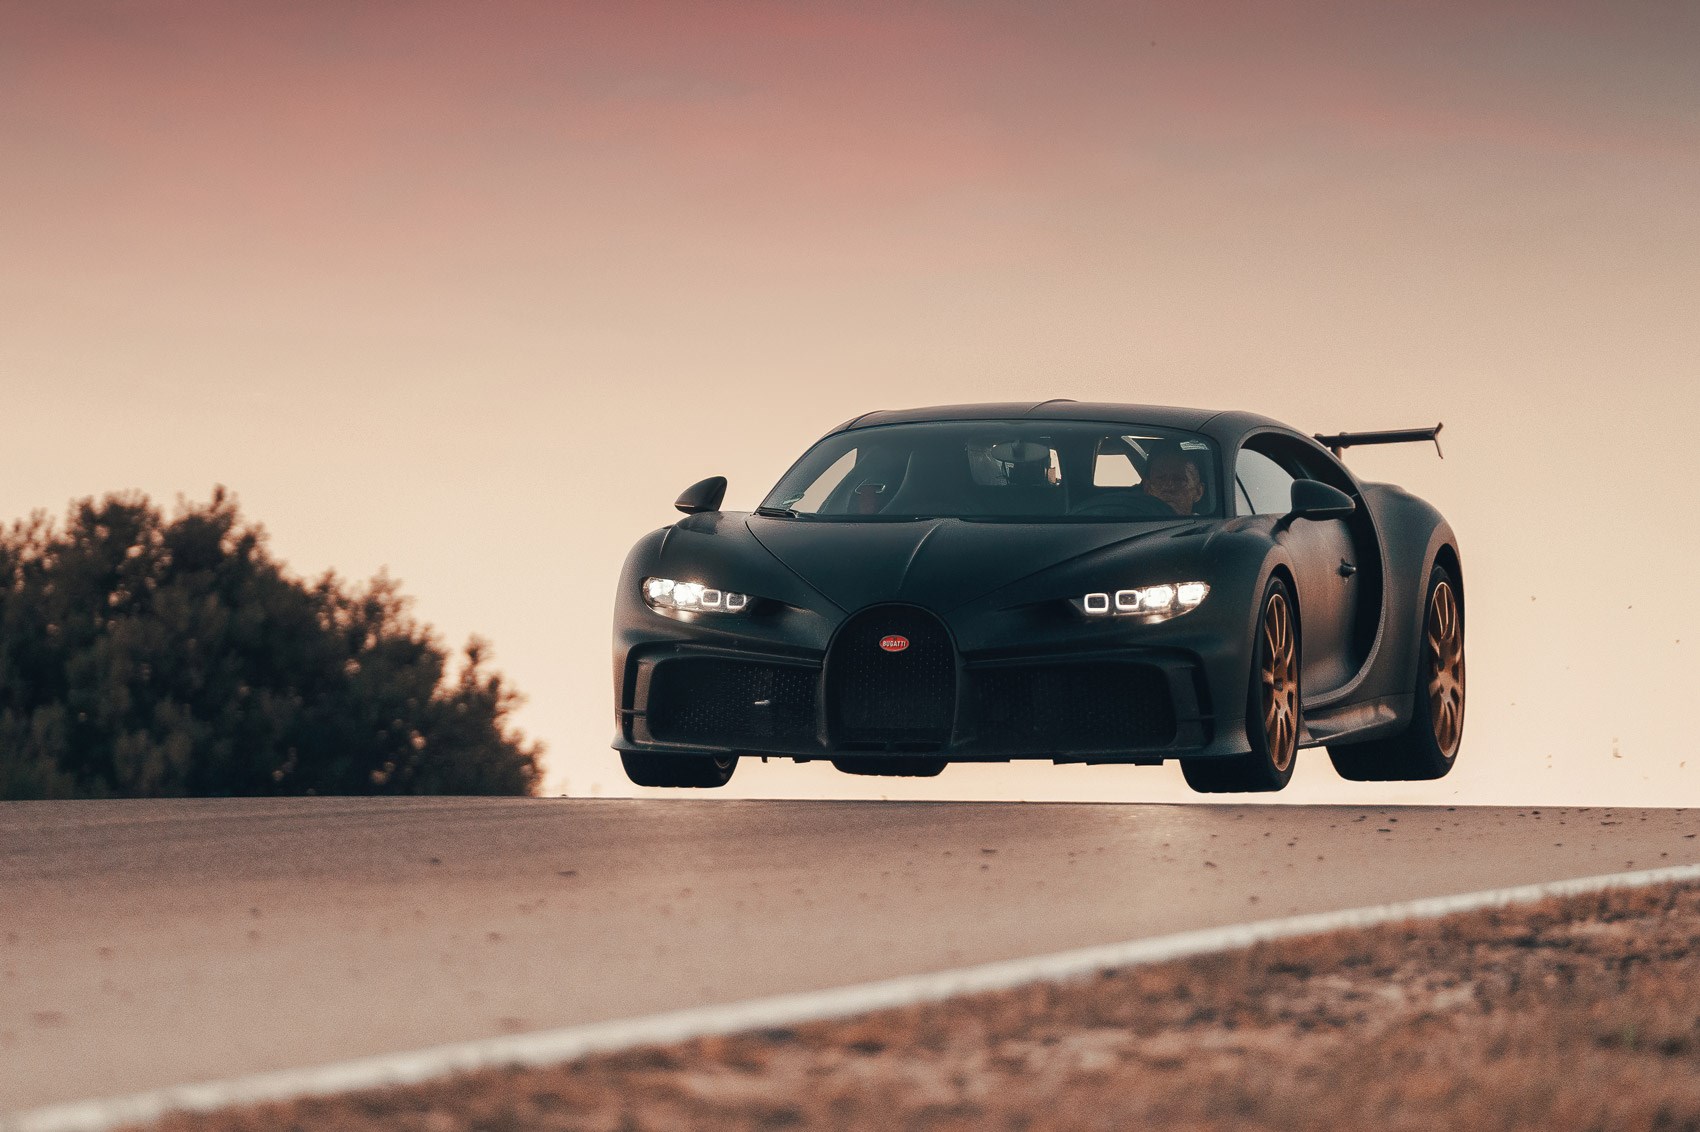 Bugatti, Rimac and Porsche announce joint venture